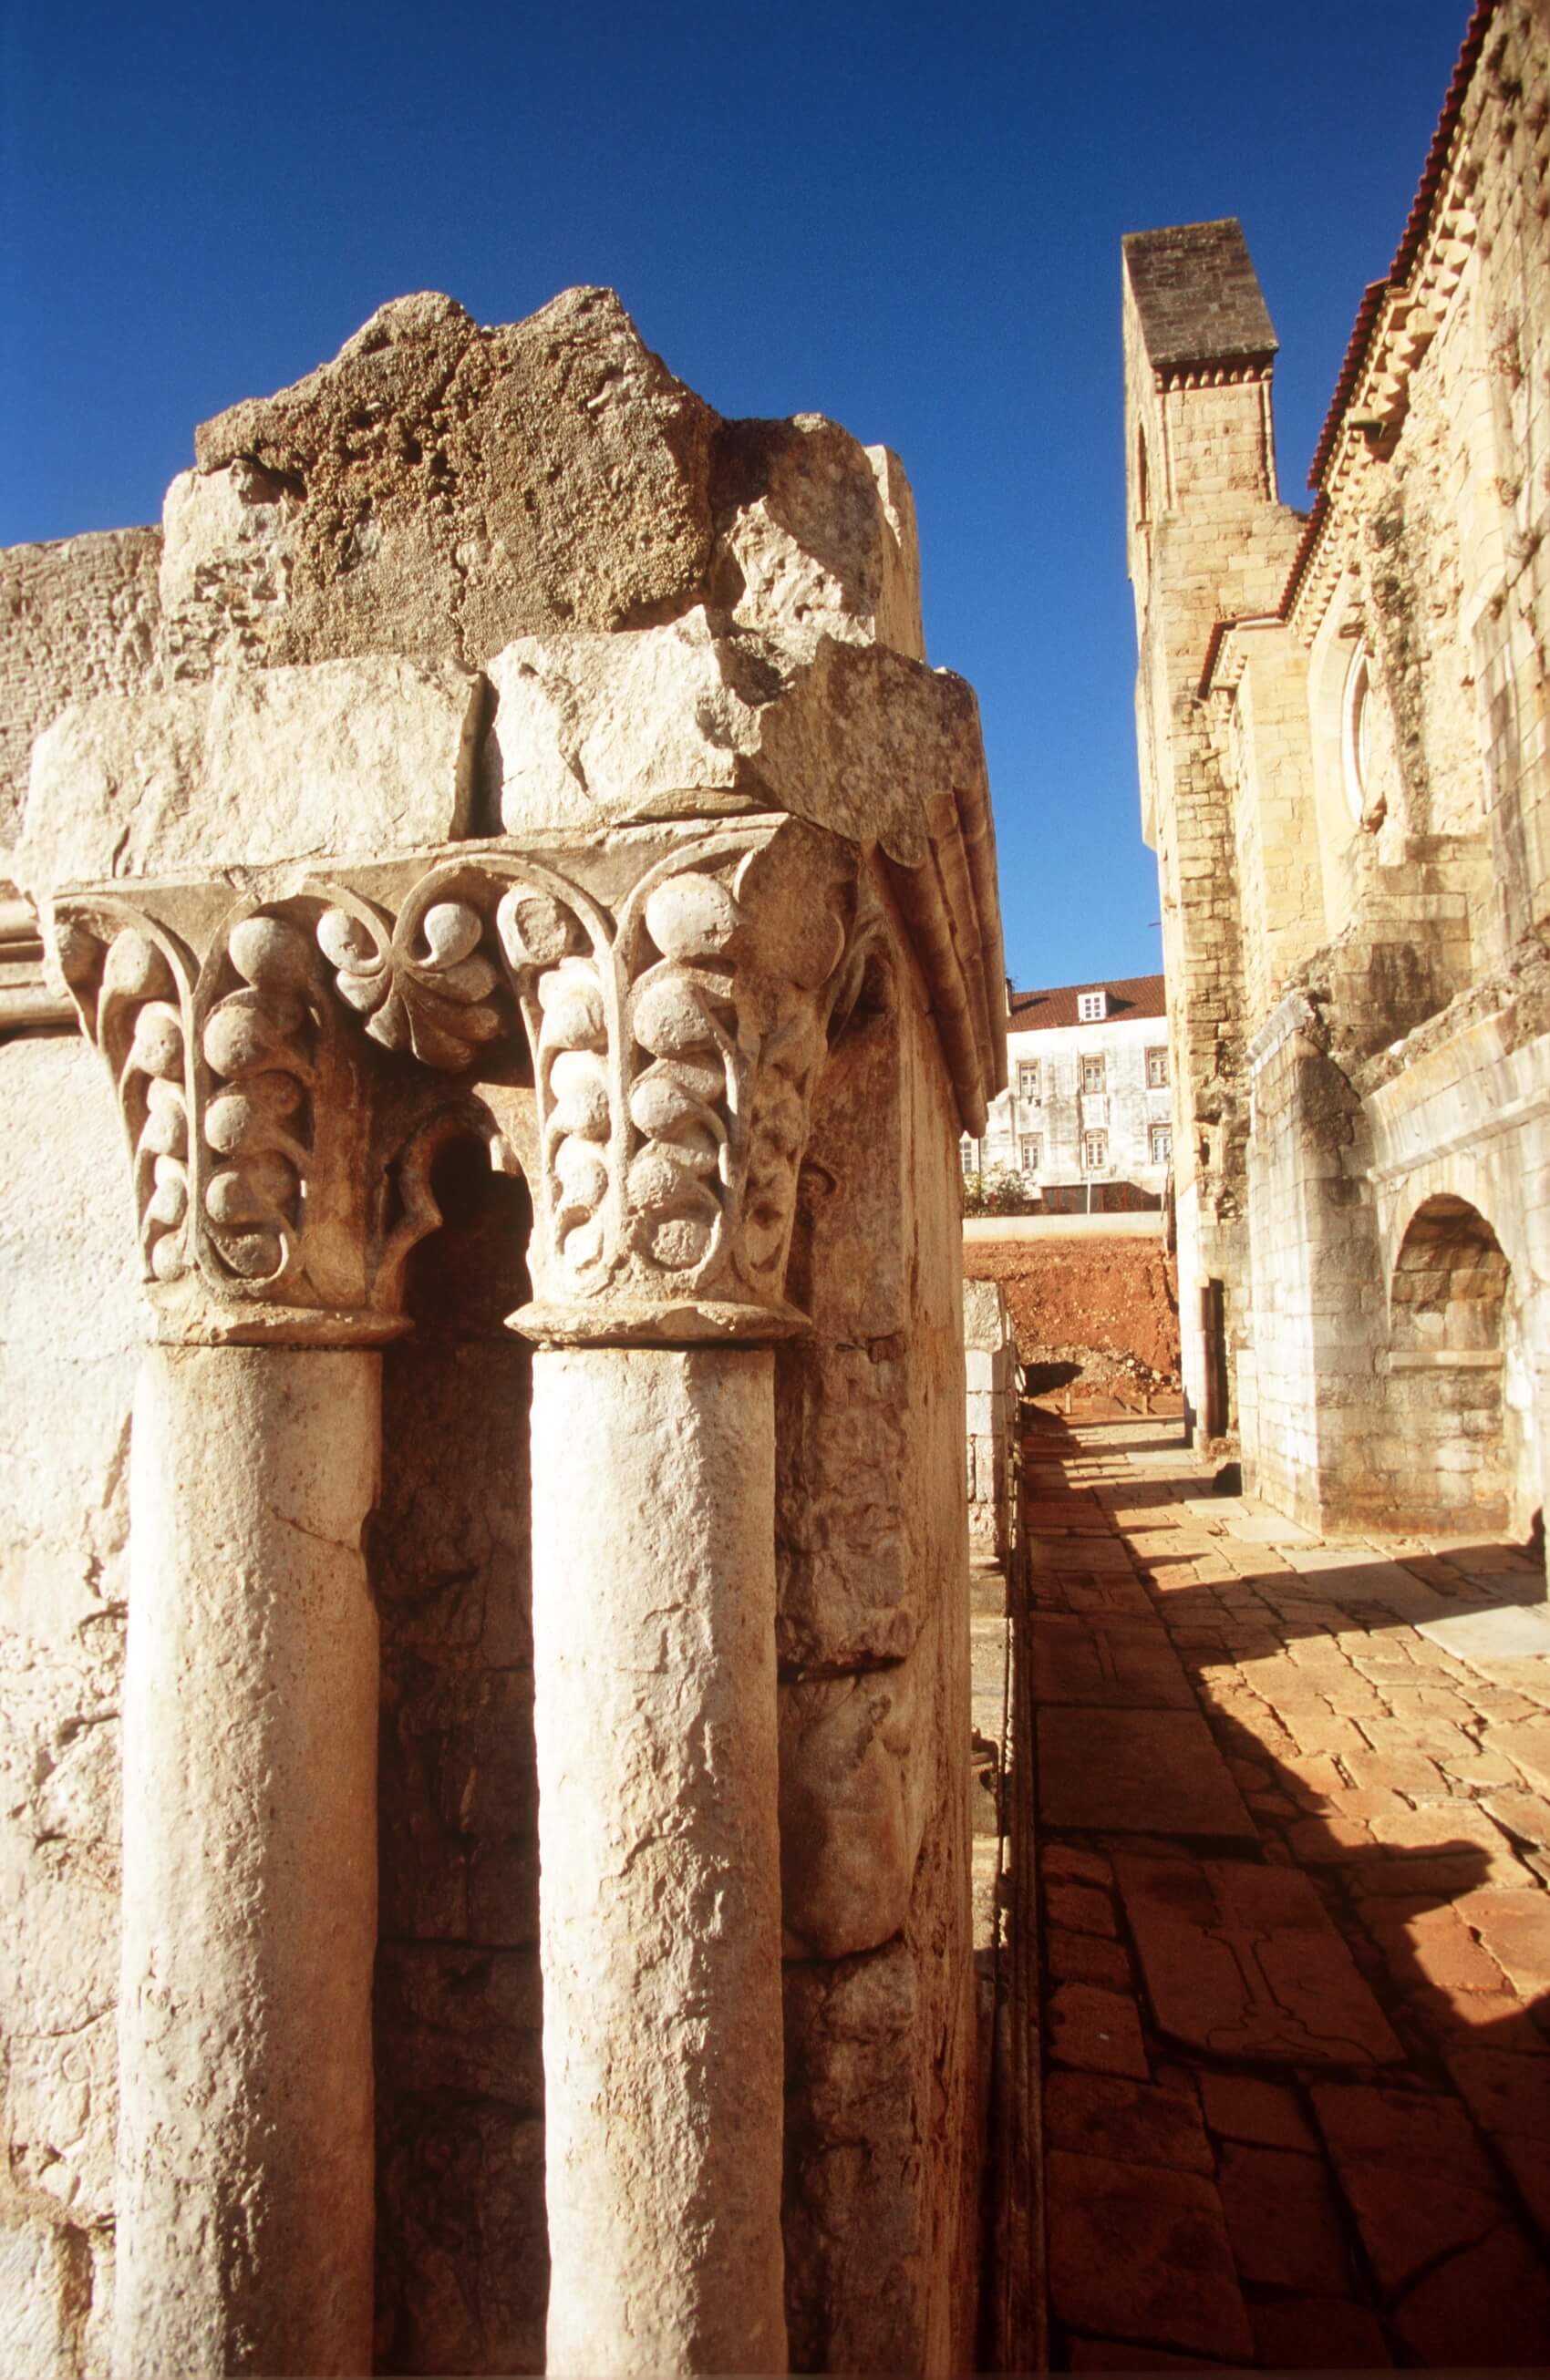 Turismo Centro de Portugal - Coimbra Conimbriga Past Immersion monastery pila